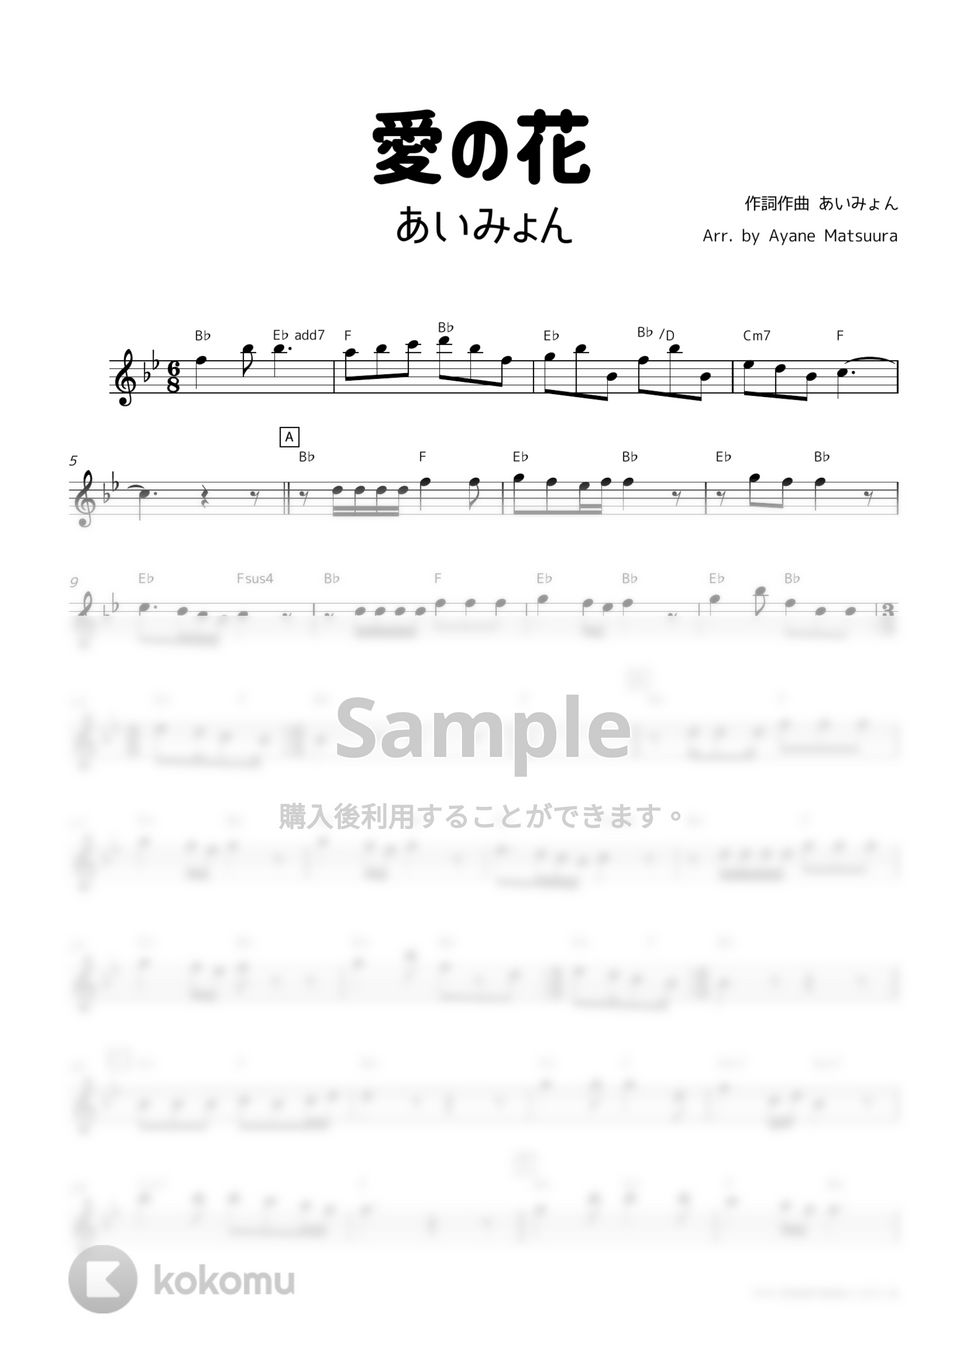 あいみょん - 愛の花 (メロディ譜) by 管楽器の楽譜★ふるすこあ